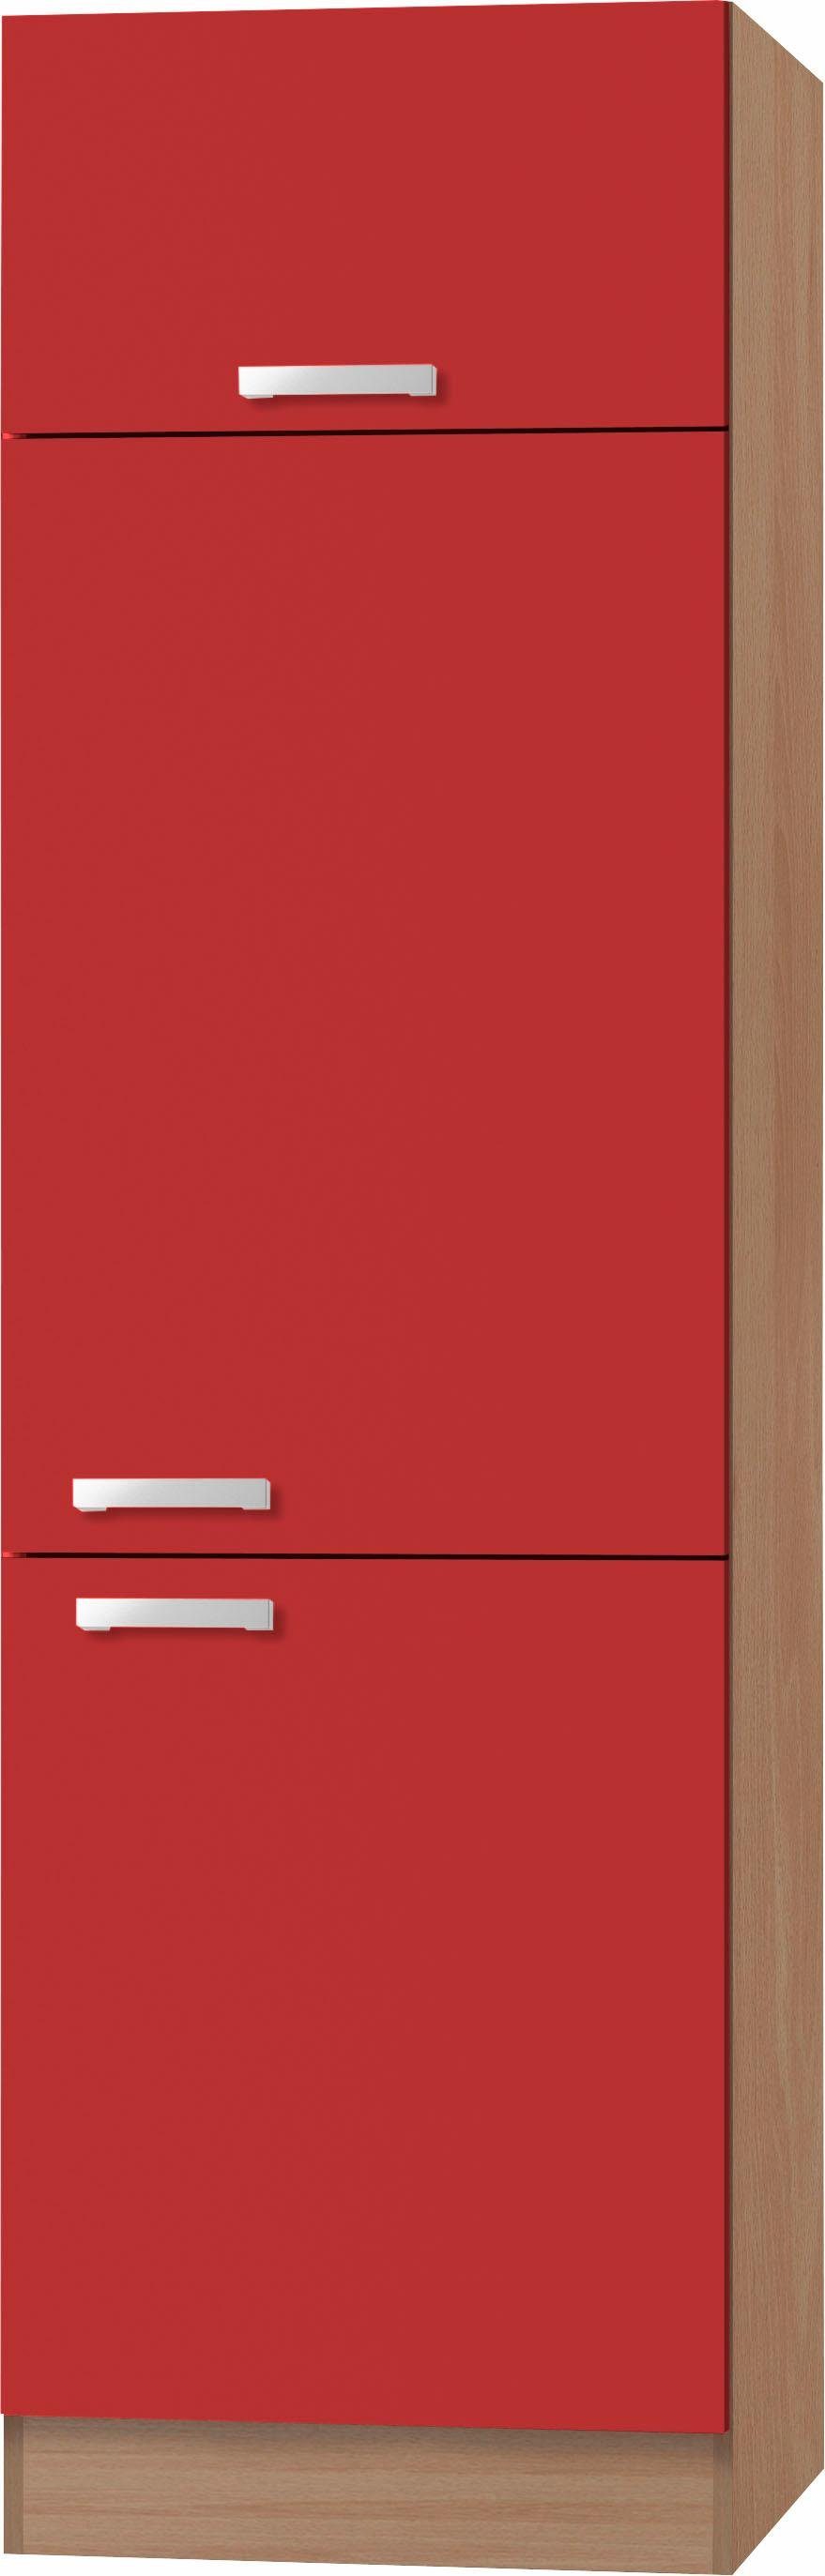 optifit koelkastombouw odense 60 cm breed, 207 cm hoog, geschikt voor inbouwkoelkast met maat 88 cm rood